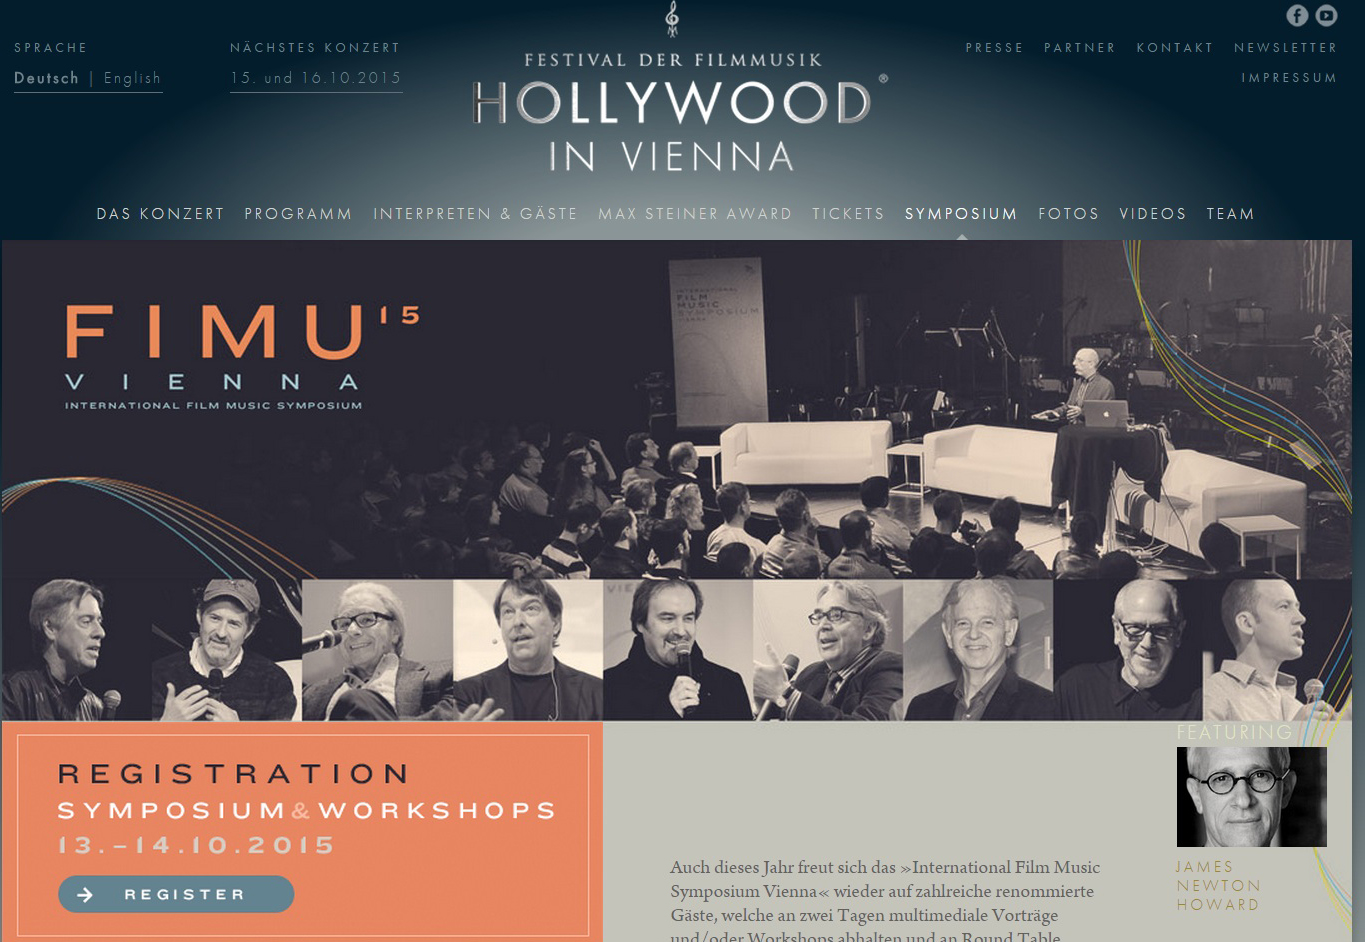 Simposio Internacional de Msica Cinematogrfica en Viena con James N. Howard y Richard Bellis